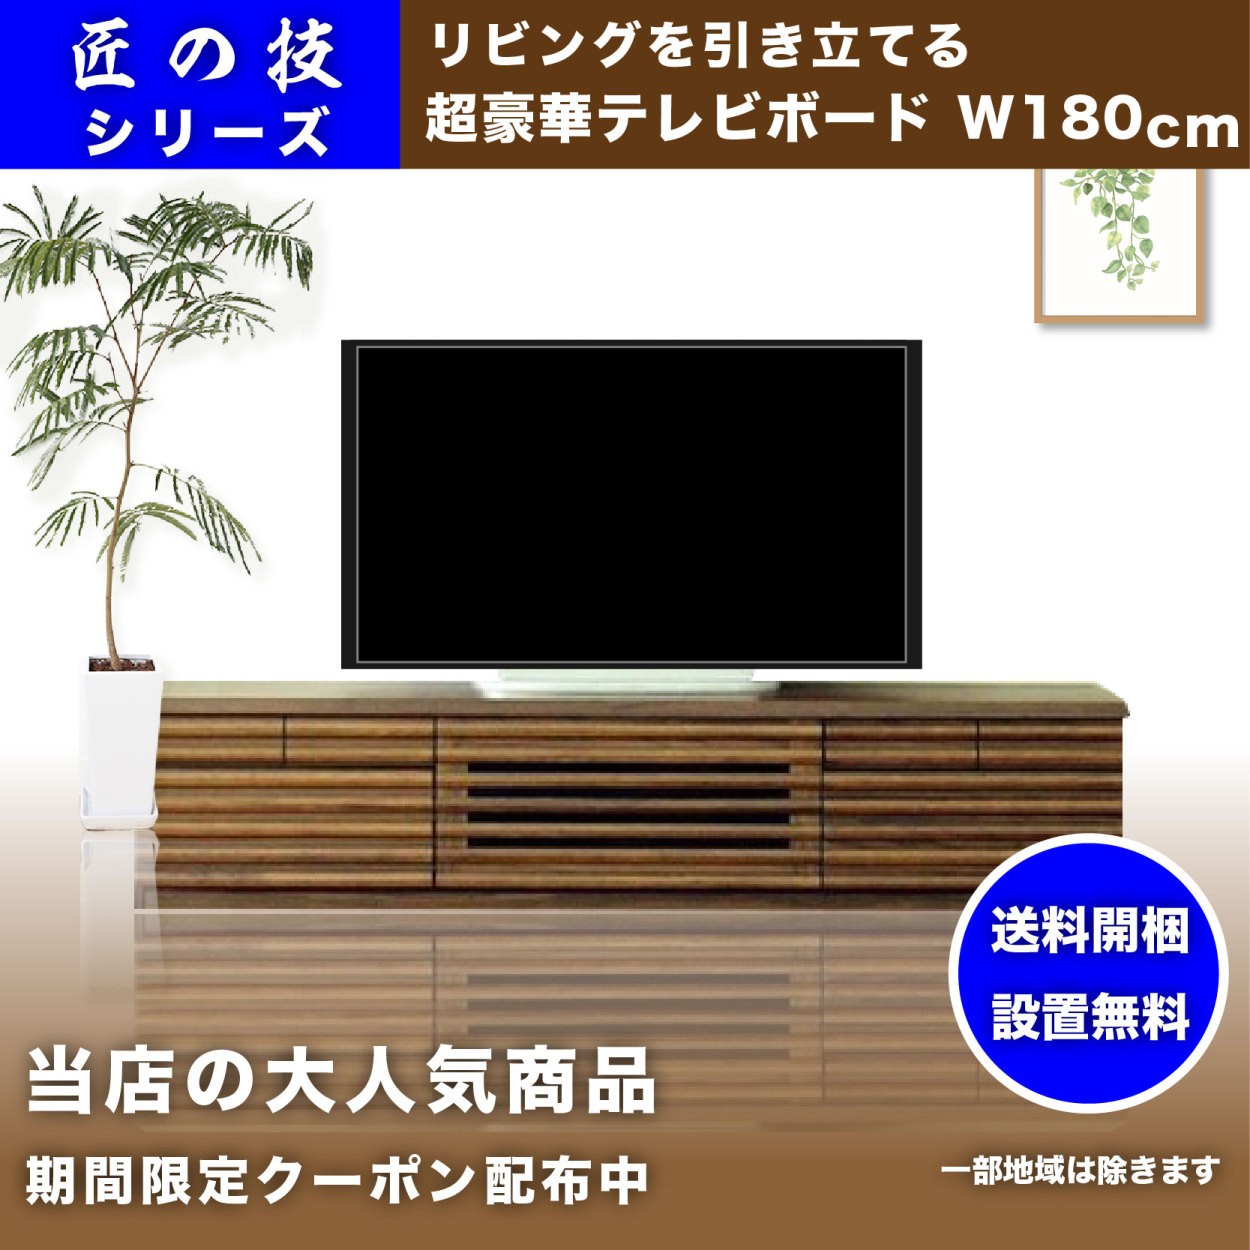 輝く高品質な 幅210cm大型テレビ台 テレビボード フロートタイプ風式テレビボード 選べる2色ナチュラル ブラウン 完成品 200  nhakhoasaido.vn